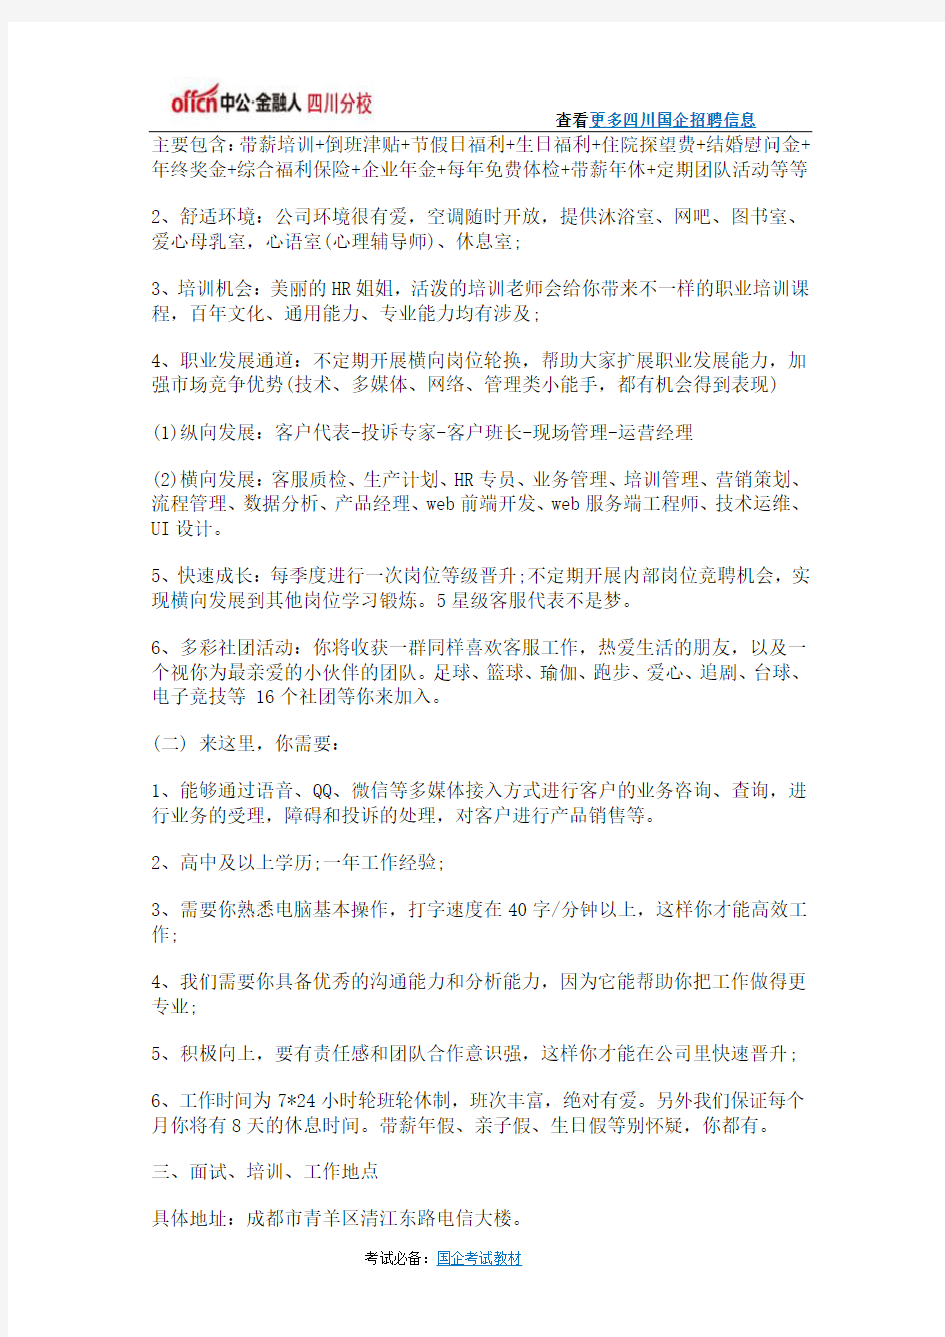 2016年中国电信四川公司社会招聘公告